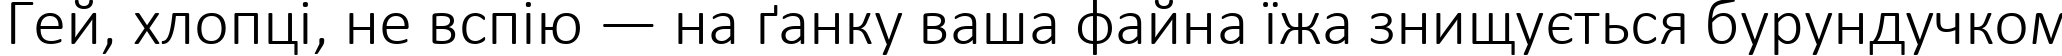 Пример написания шрифтом Calibri Light текста на украинском